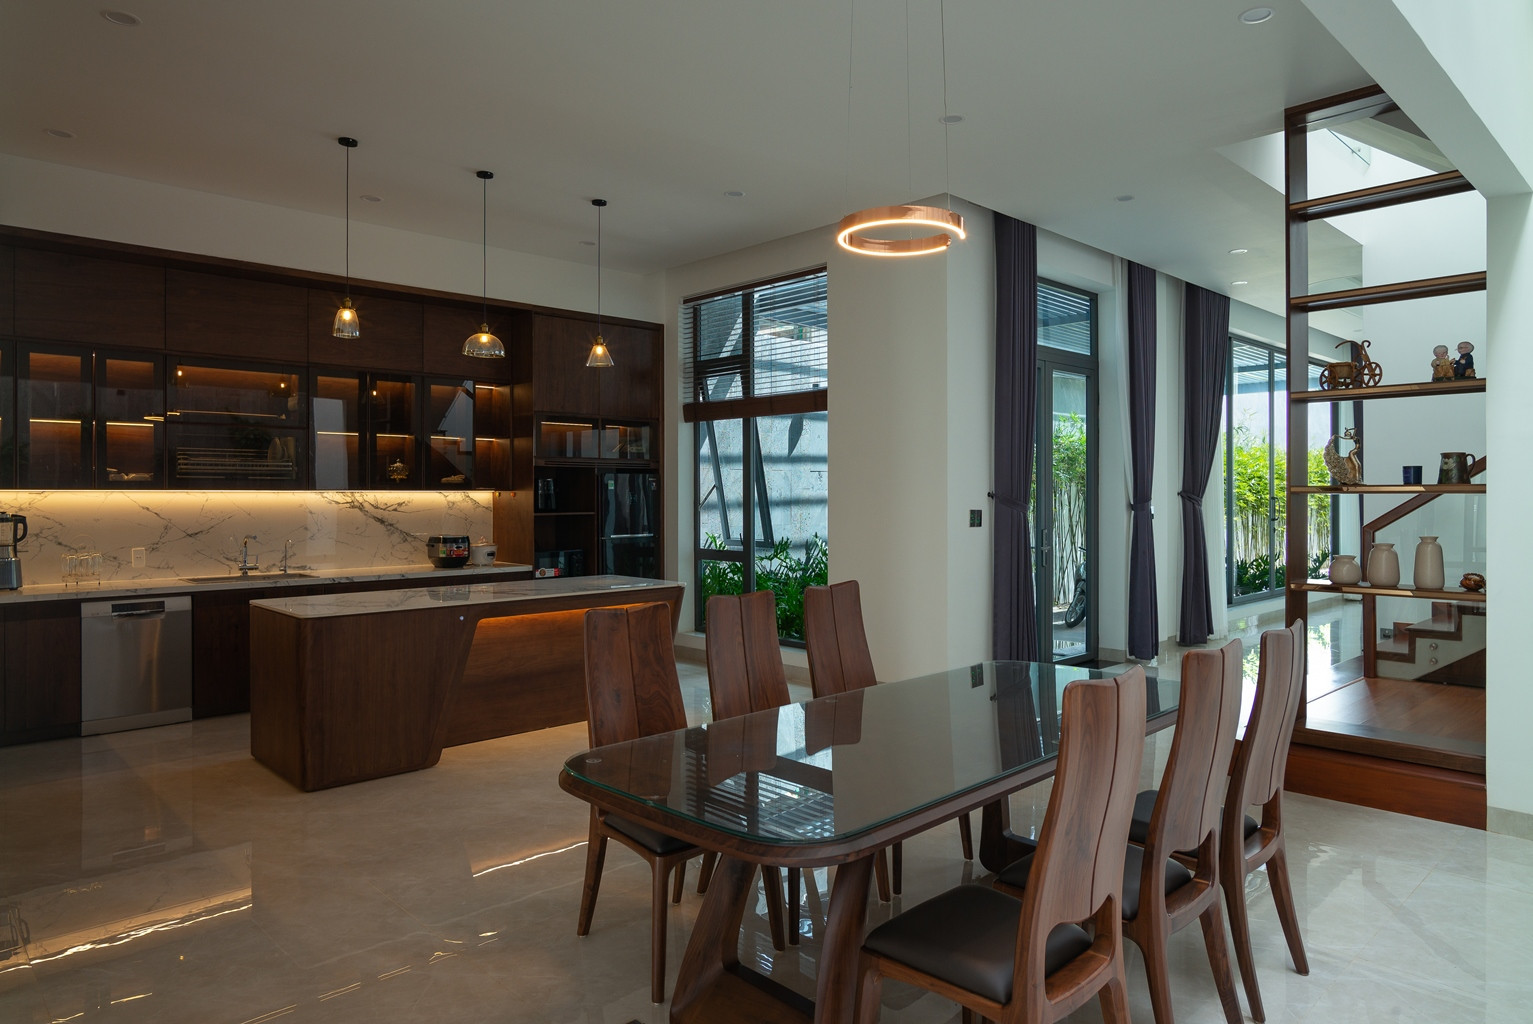 Qua phòng khách là đến khu vực bếp - ăn của gia đình, với nội thất chủ yếu sử dụng gỗ tự nhiên và gỗ công nghiệp.